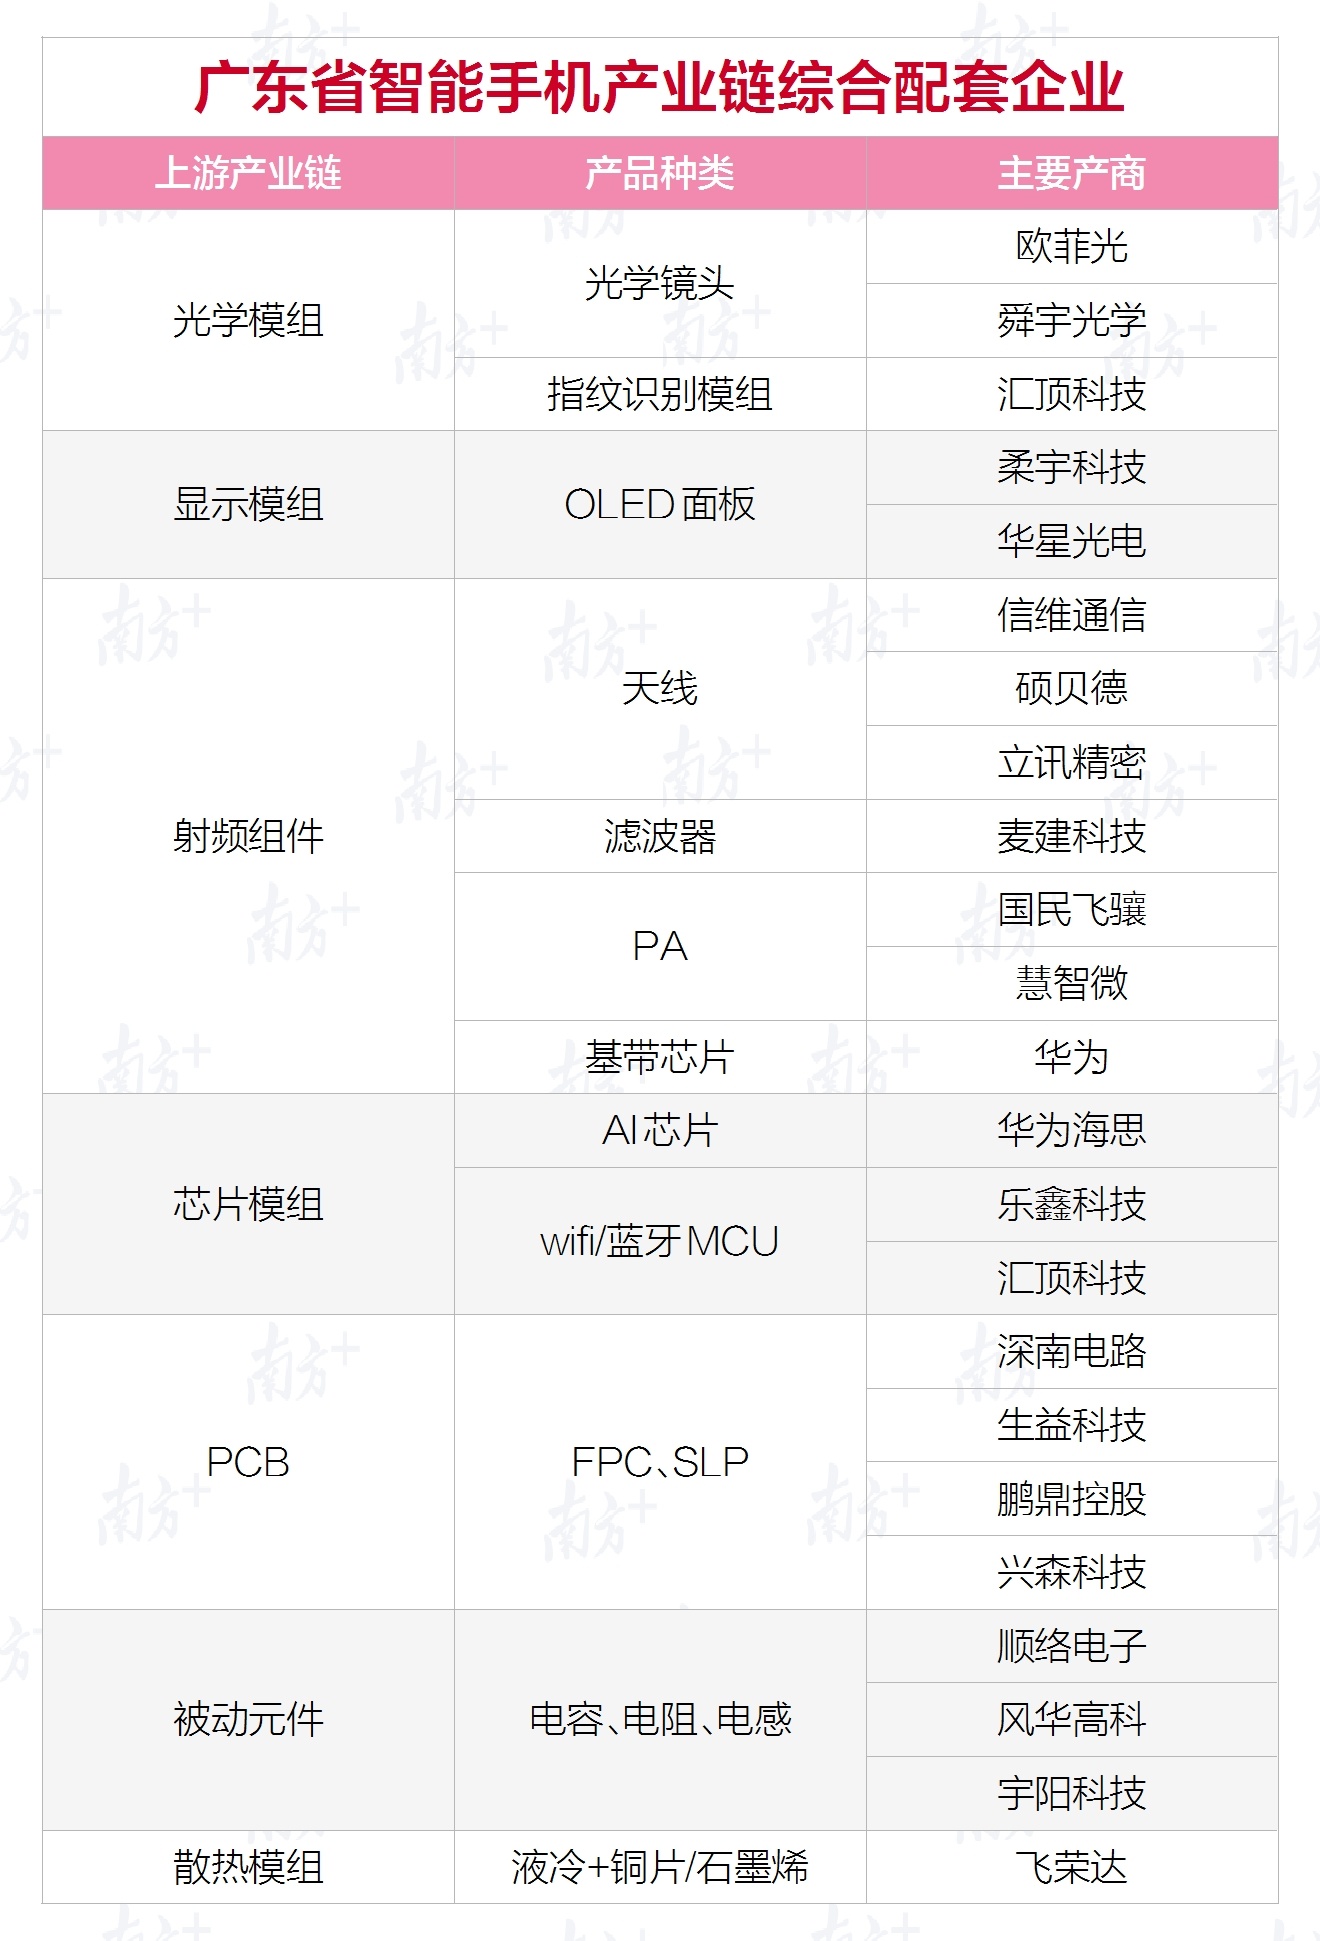 广东智能手机产业链综合配套企业。